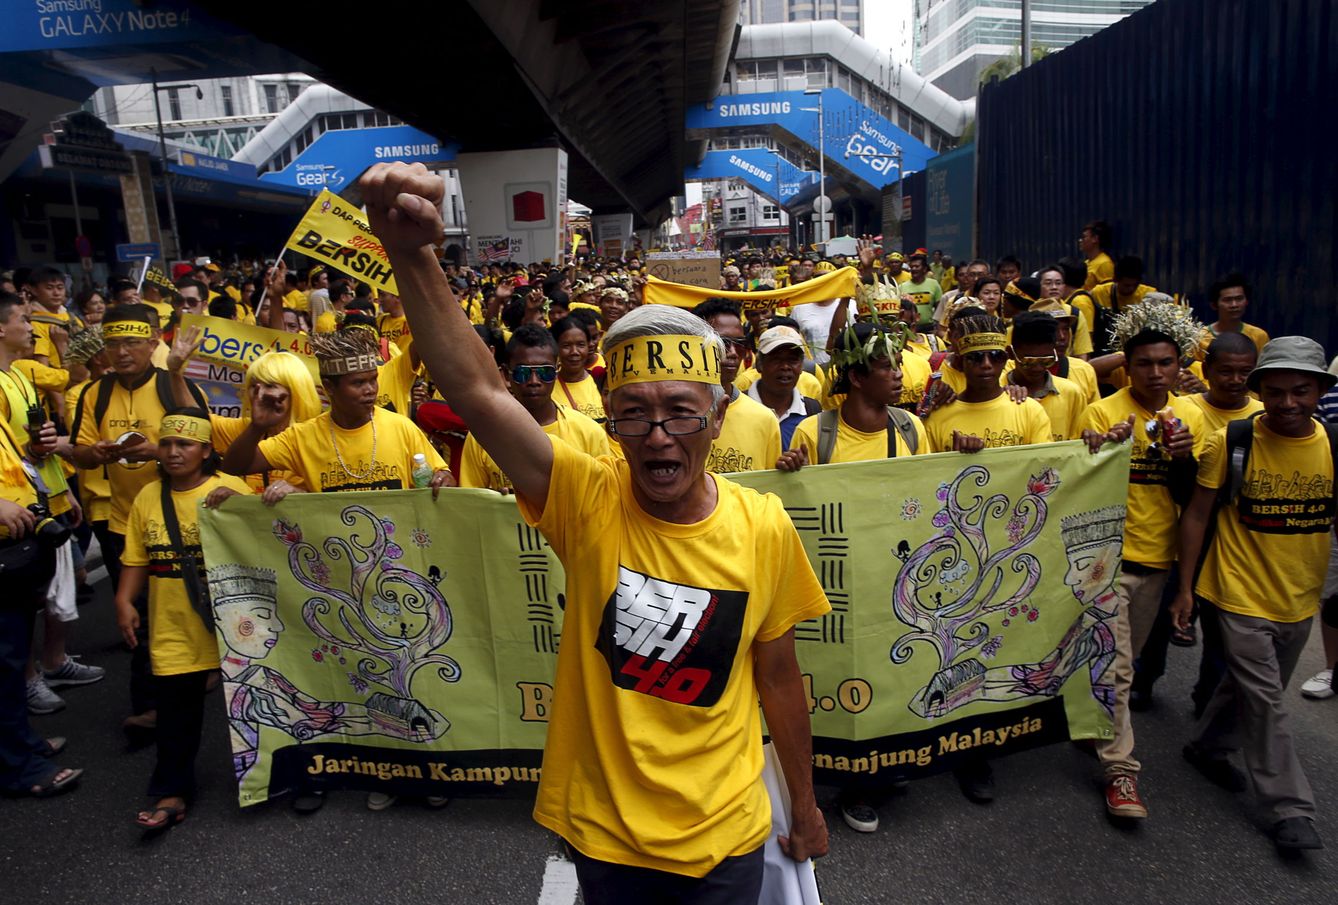 Un seguidor del grupo prodemocrático Bersih, durante una marcha de protesta en Kuala Lumpur, en agosto de 2015. (Reuters)